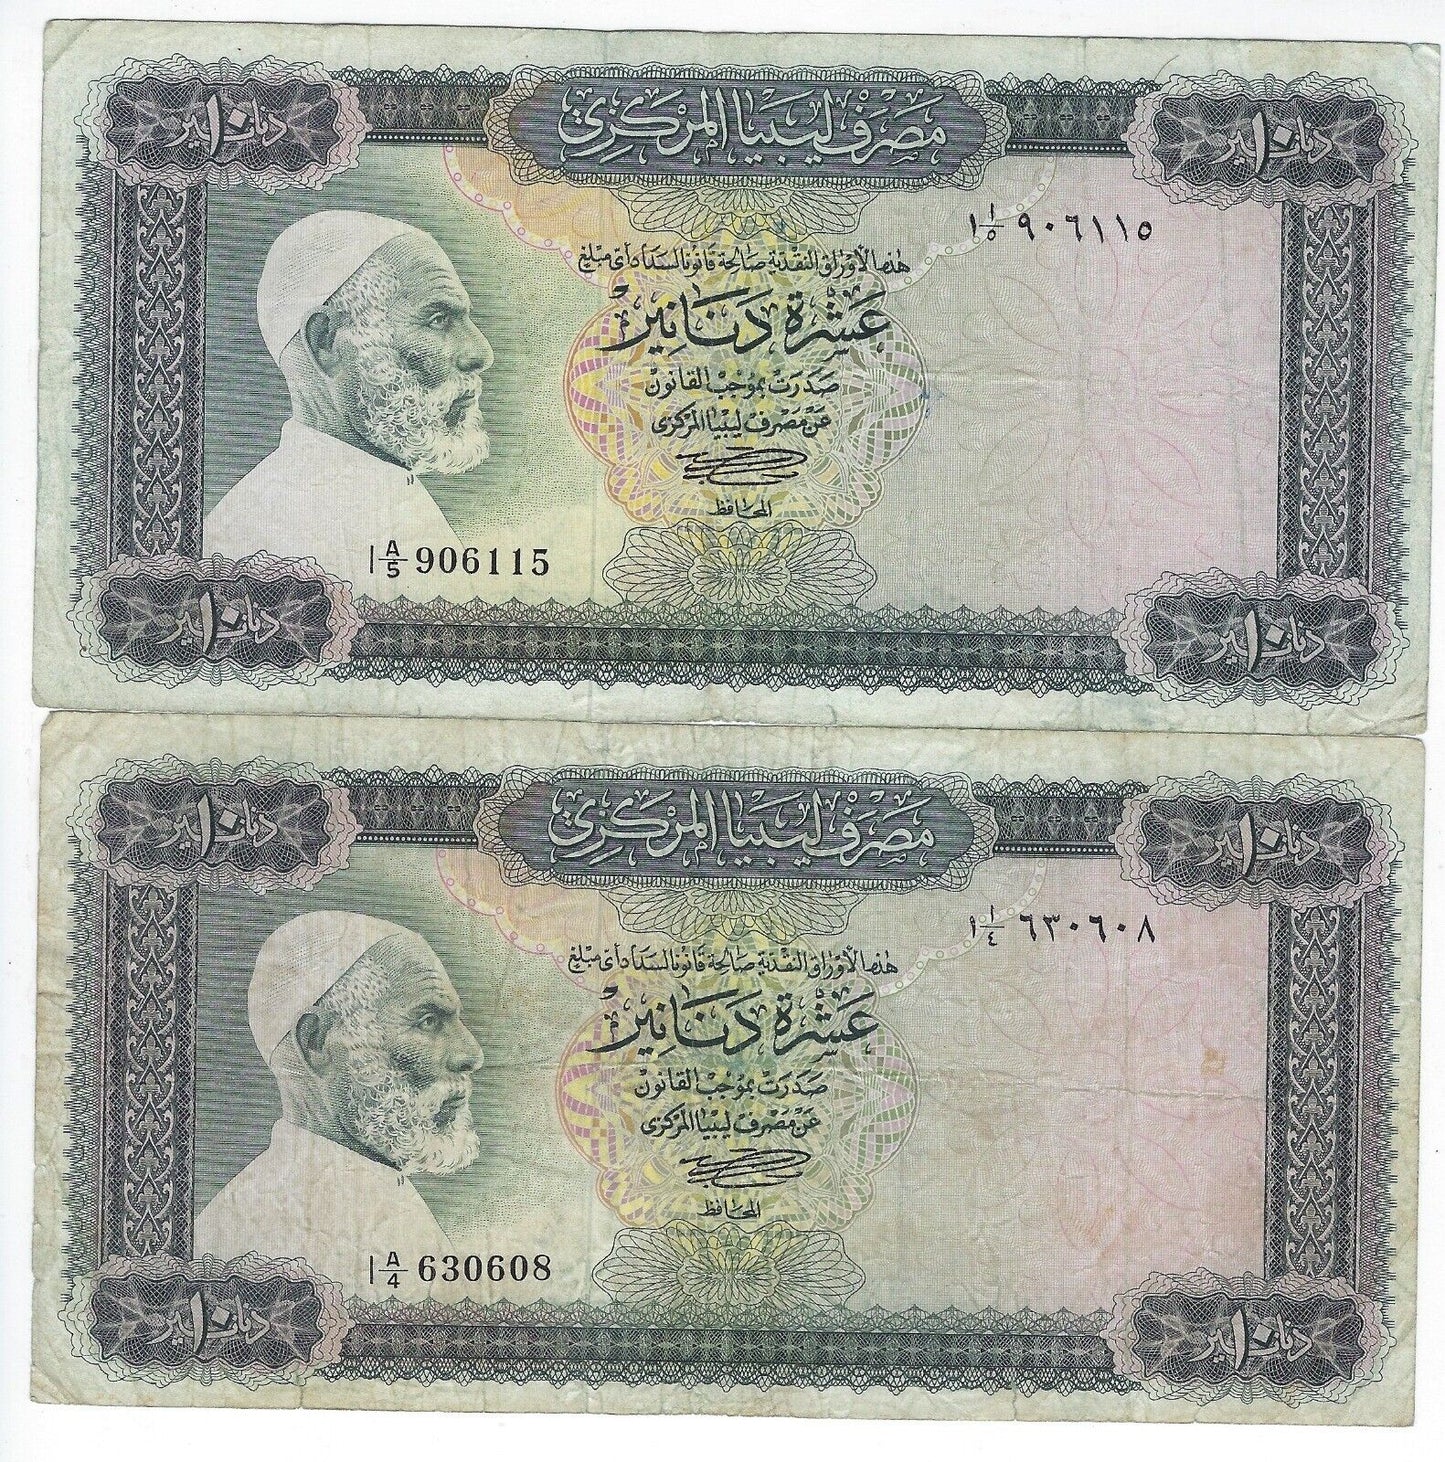 Libya 10 Dinars 1971, 2 Notes, VF, LY2